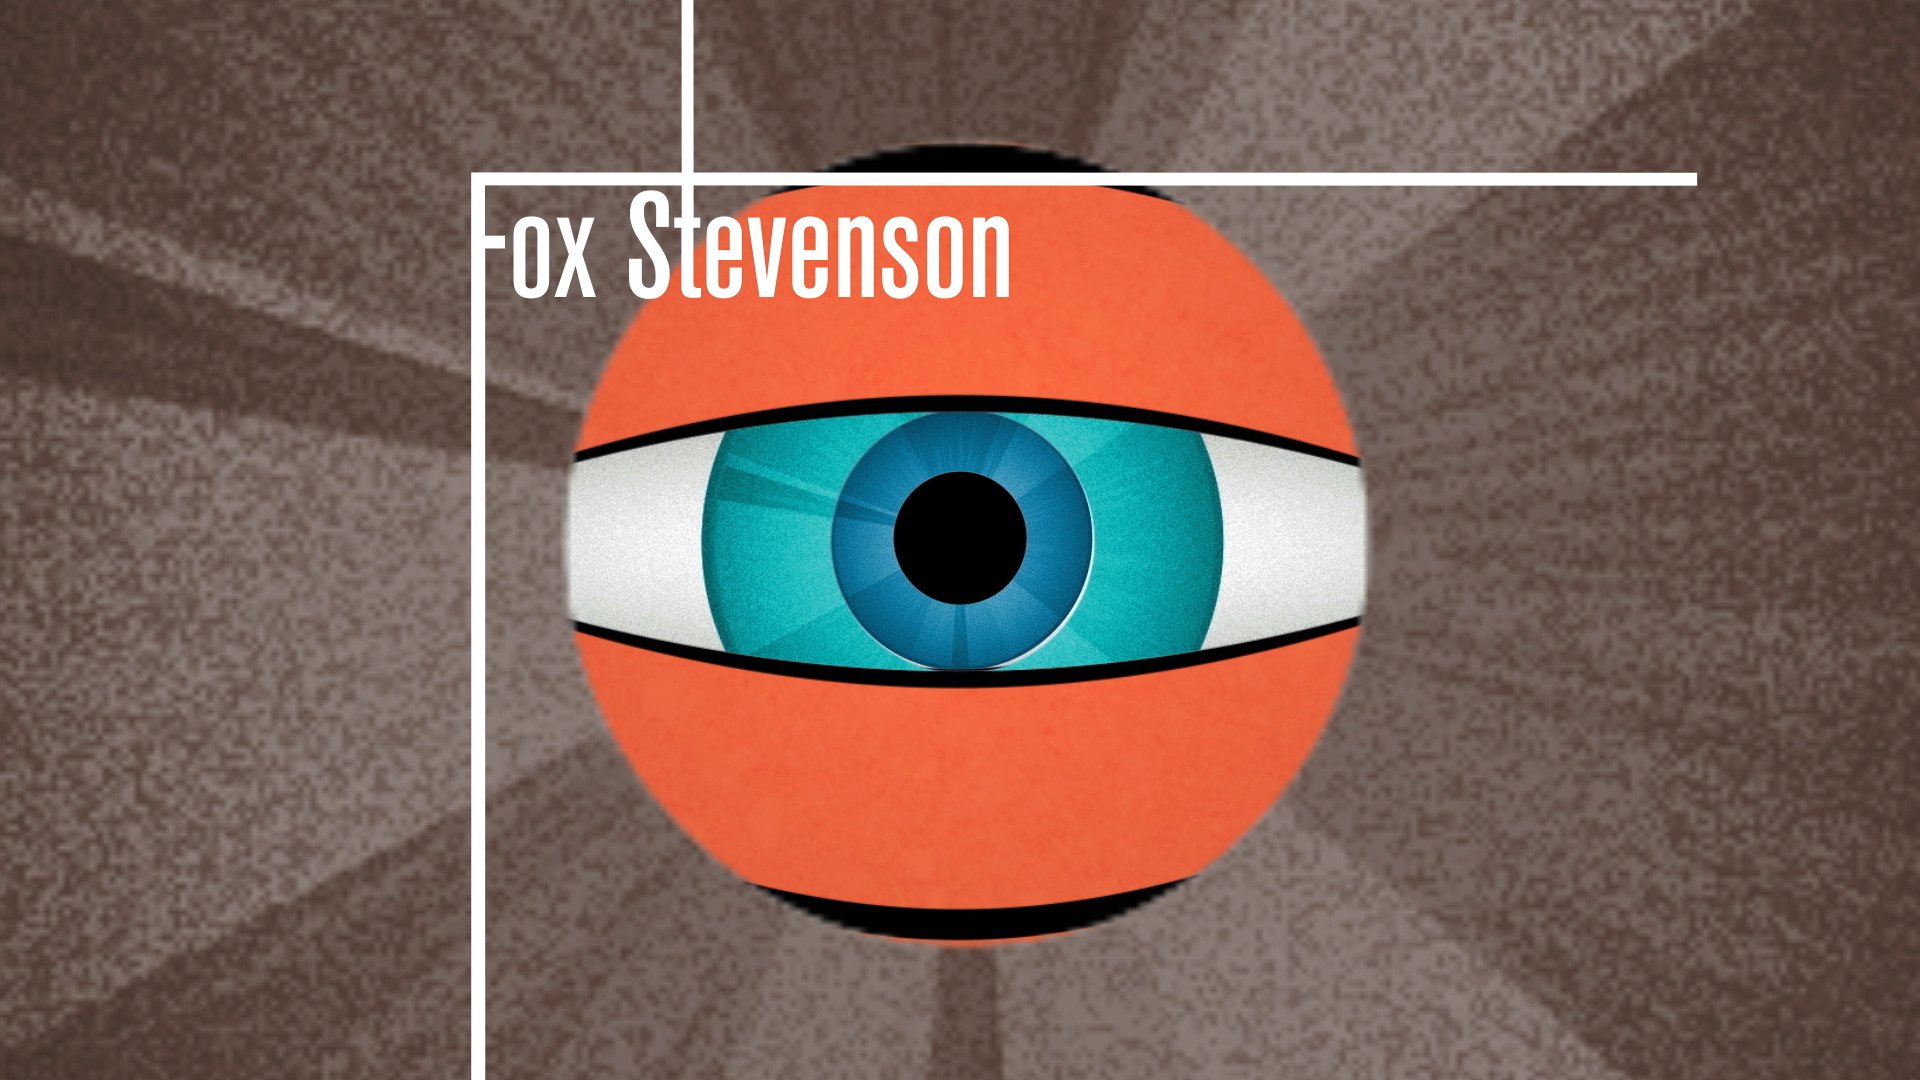 FoxStevenson_02.jpg